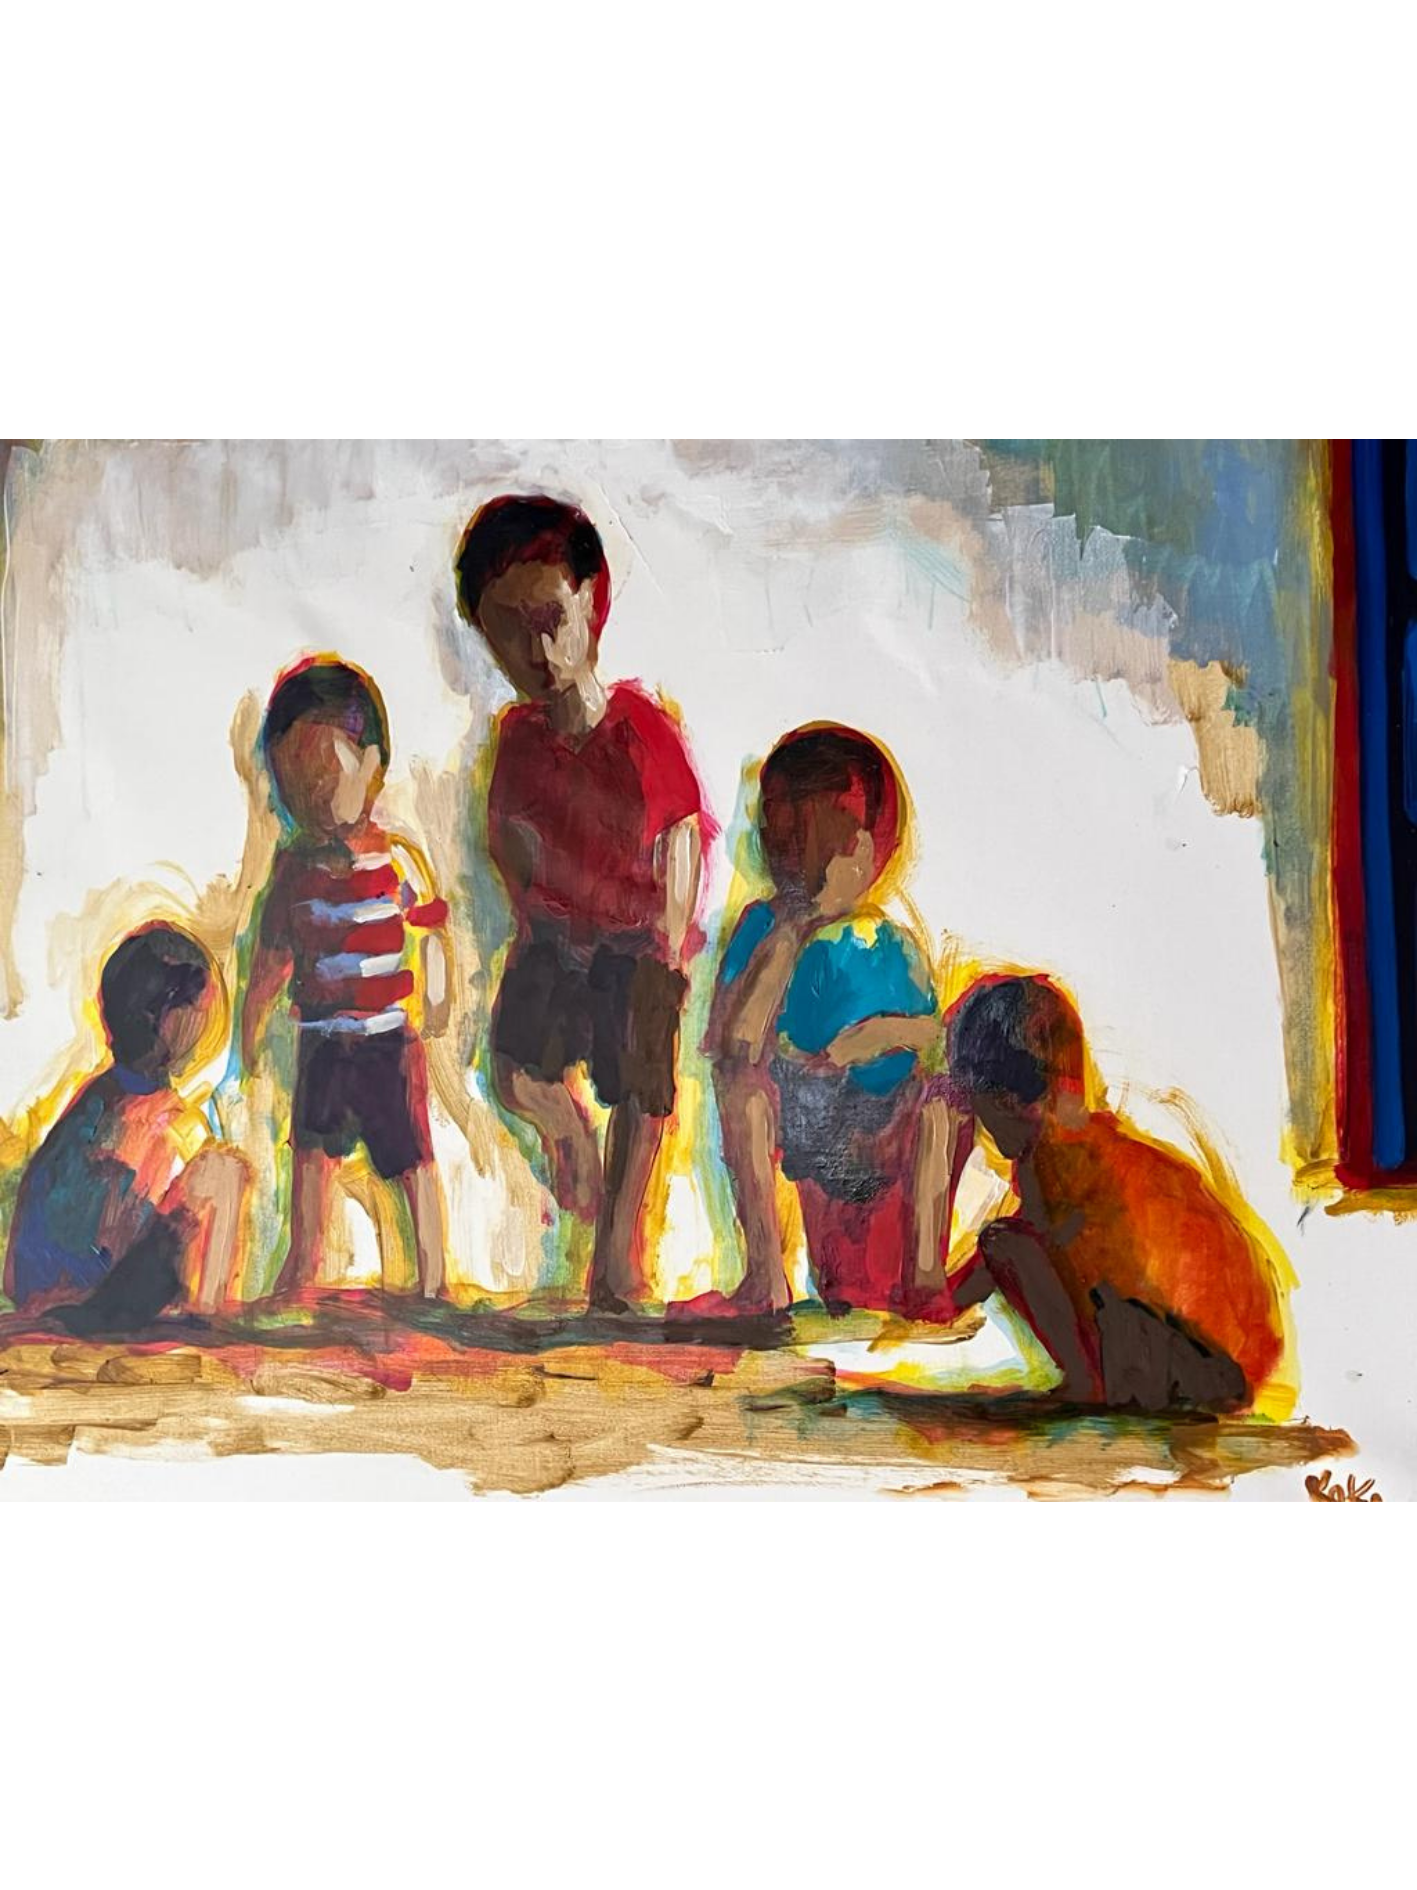 Cuadro "Niños" de Koki Ruiz 60 x 70 cm